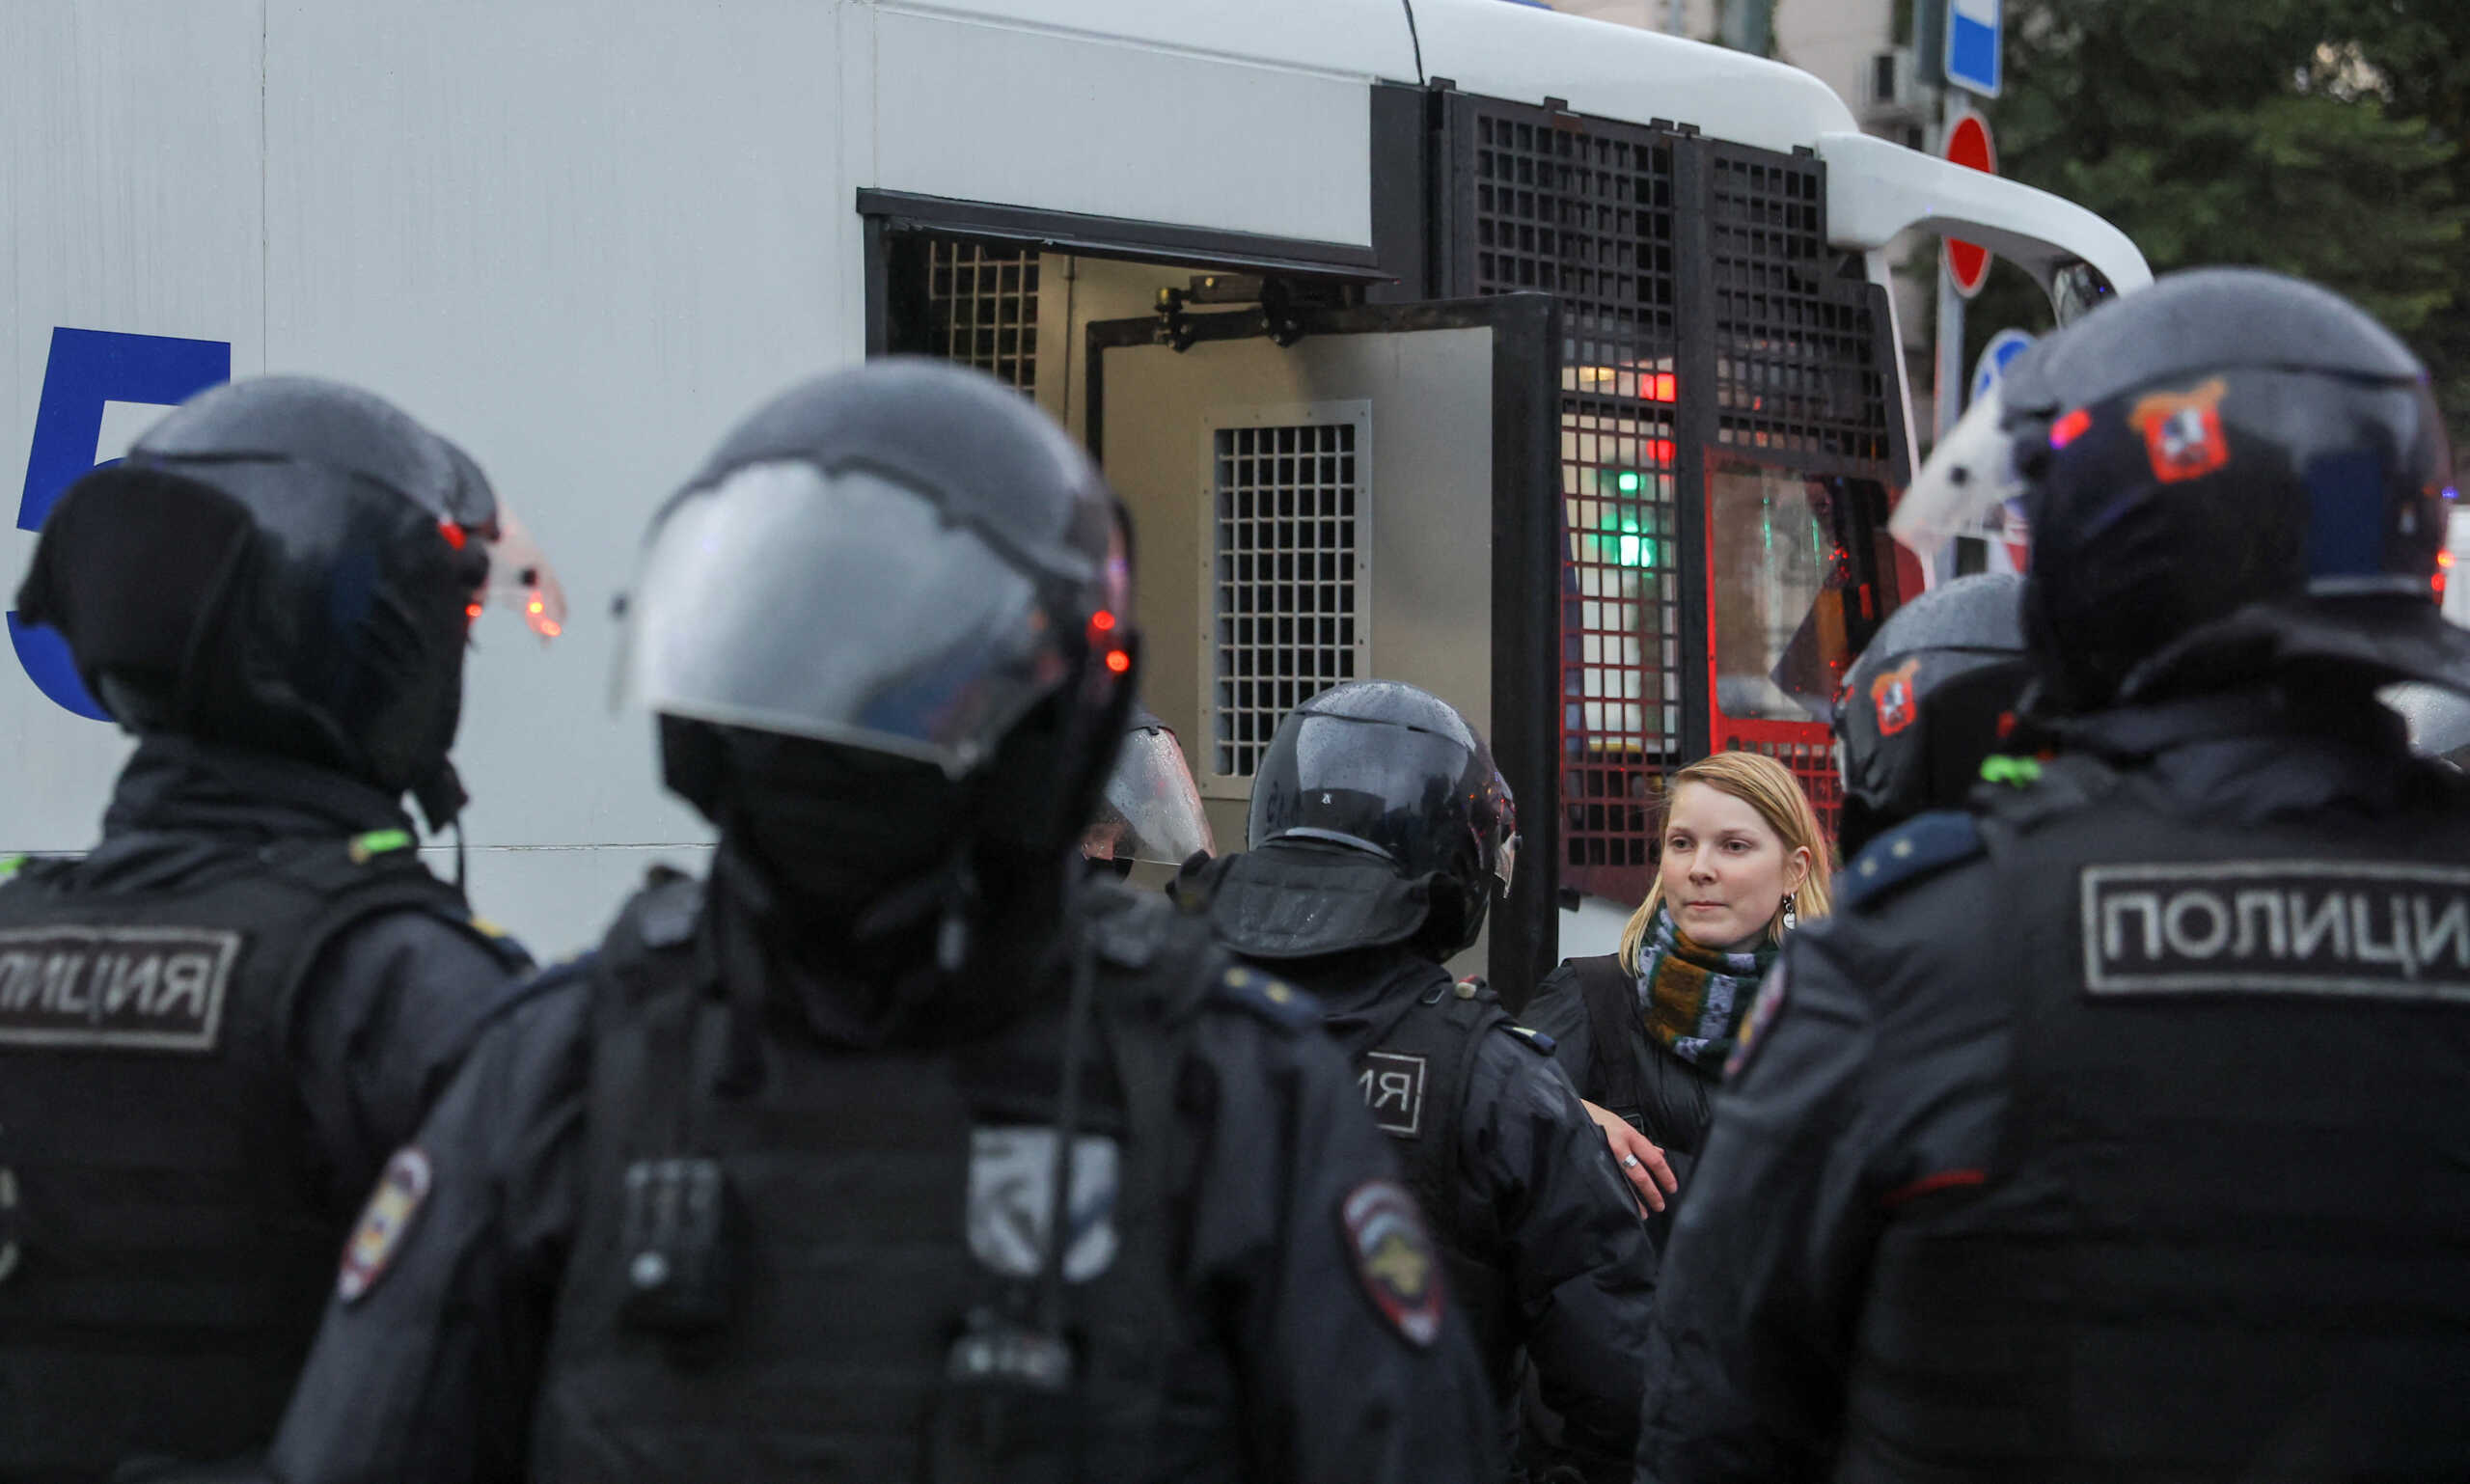 Ρωσία: Συγκρούσεις μεταξύ αστυνομικών και πολιτών για την επιστράτευση στην περιοχή Νταγκεστάν